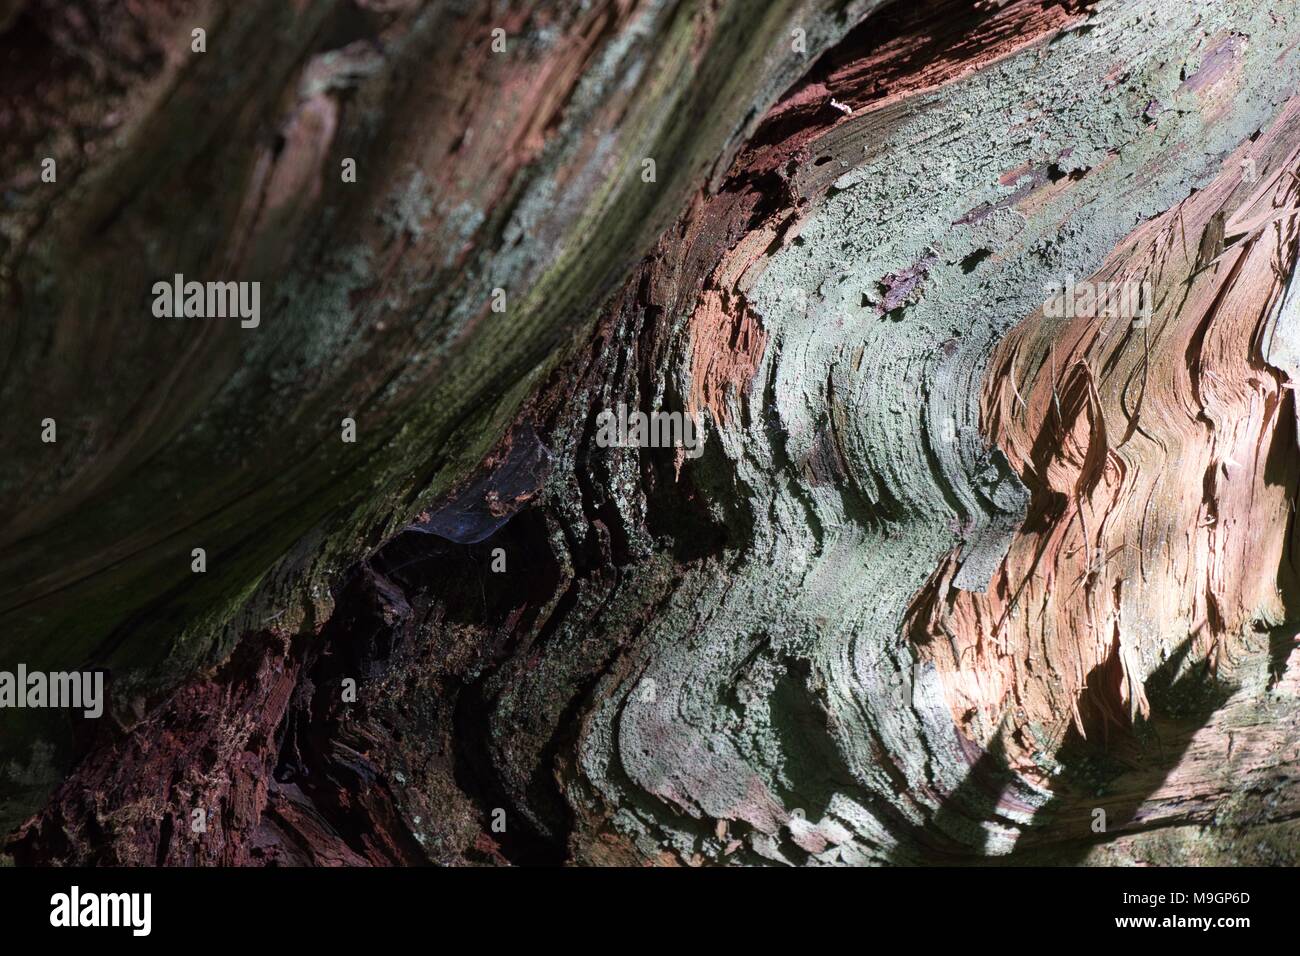 Patterns on a broken tree stump Stock Photo